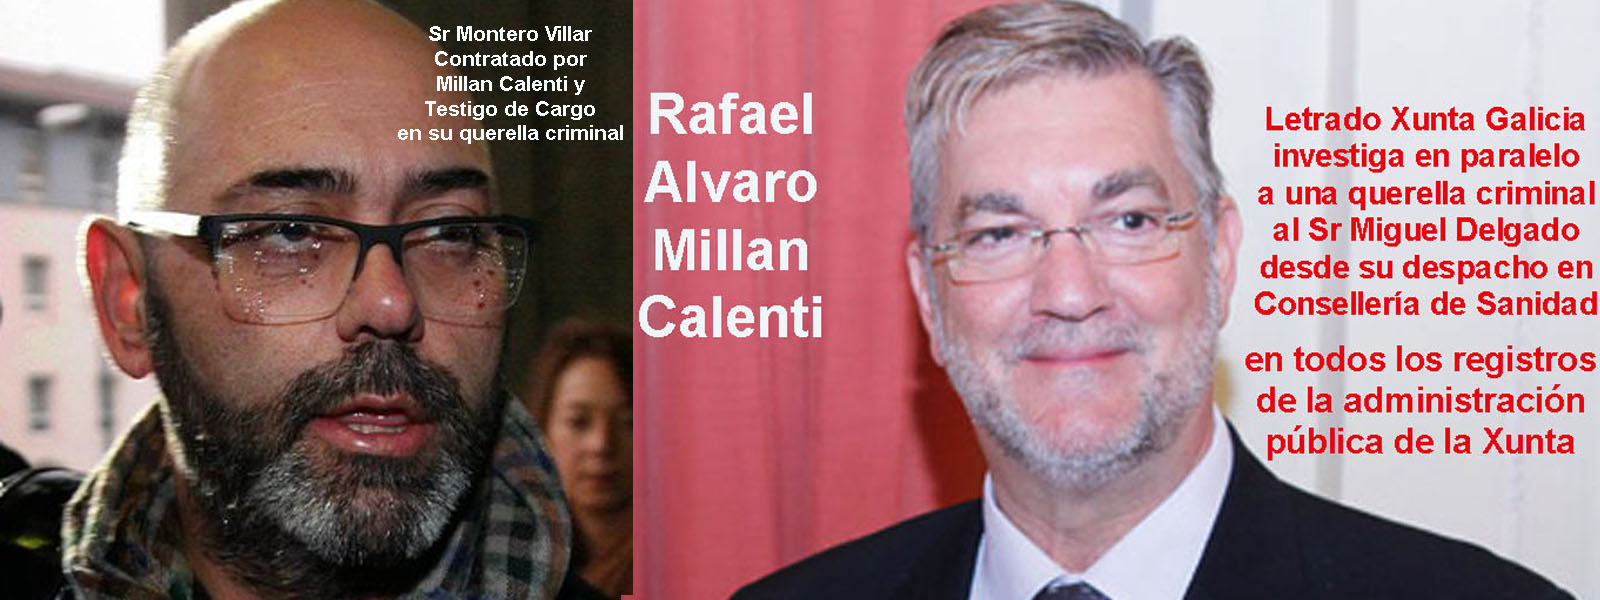 Montero Villar y Calenti a la luz de la legalidad podrían estar ...